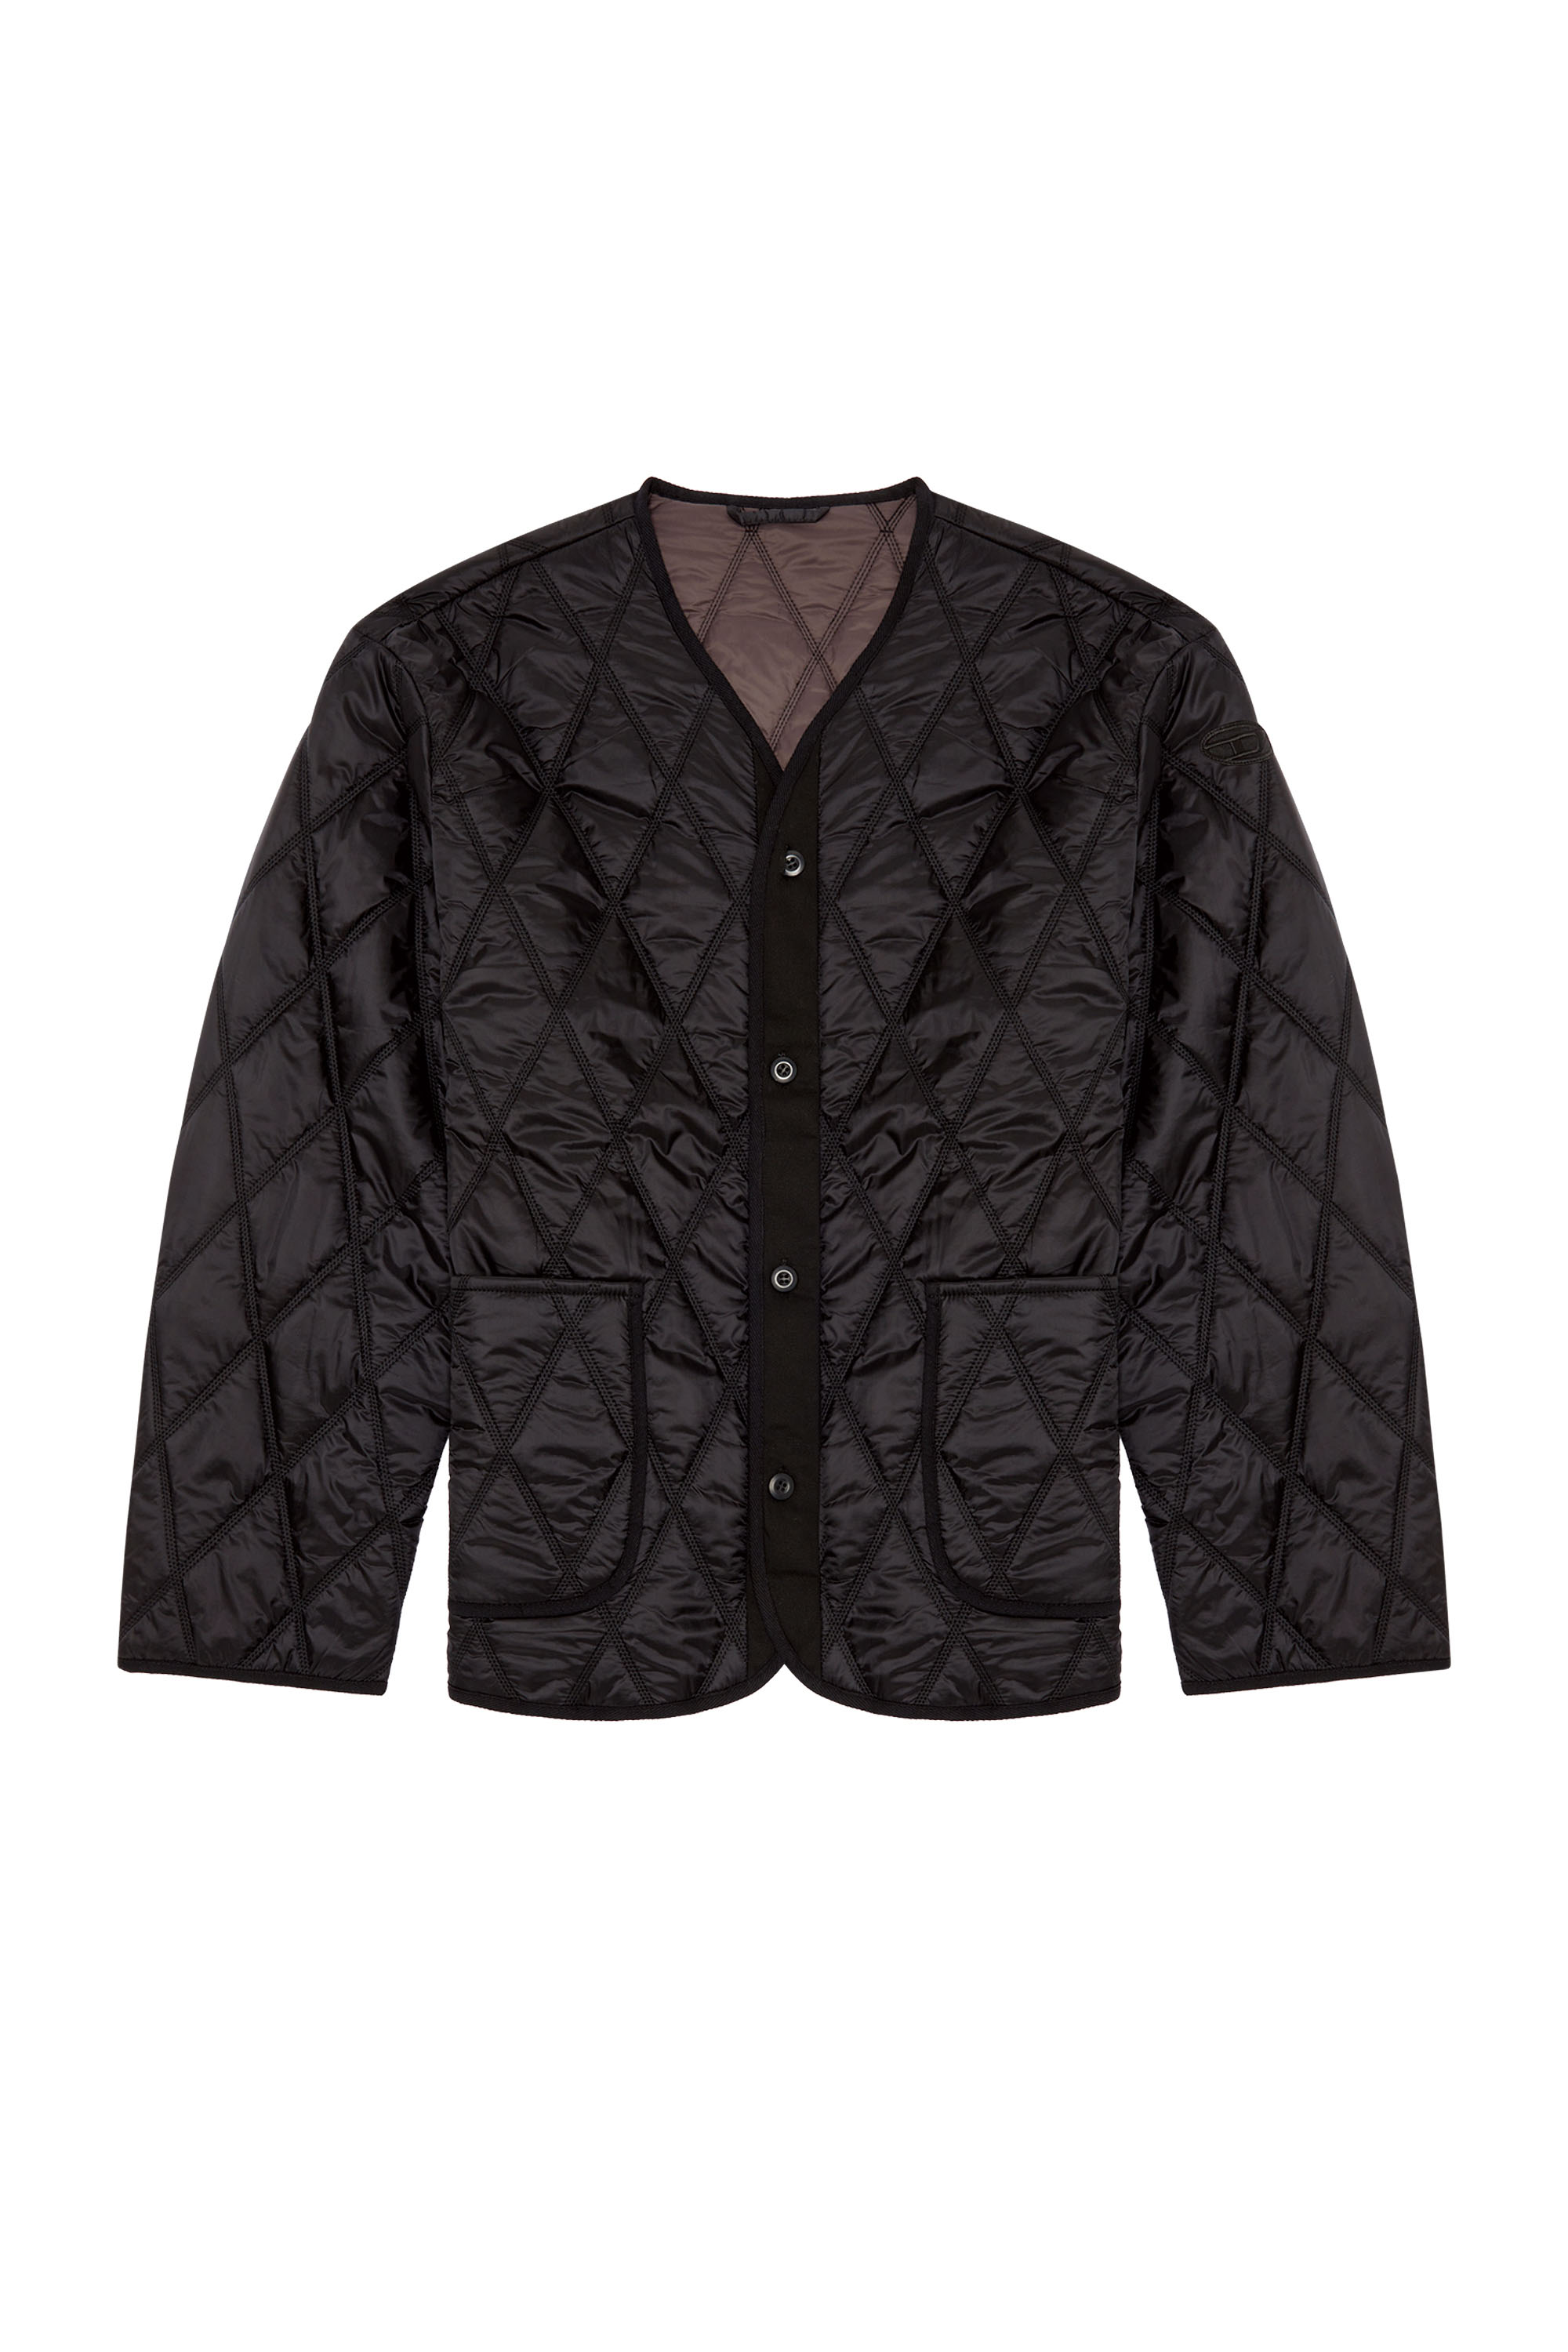 Diesel - J-BOY, Man V-neck jacket in quilted nylon in Black - Image 3